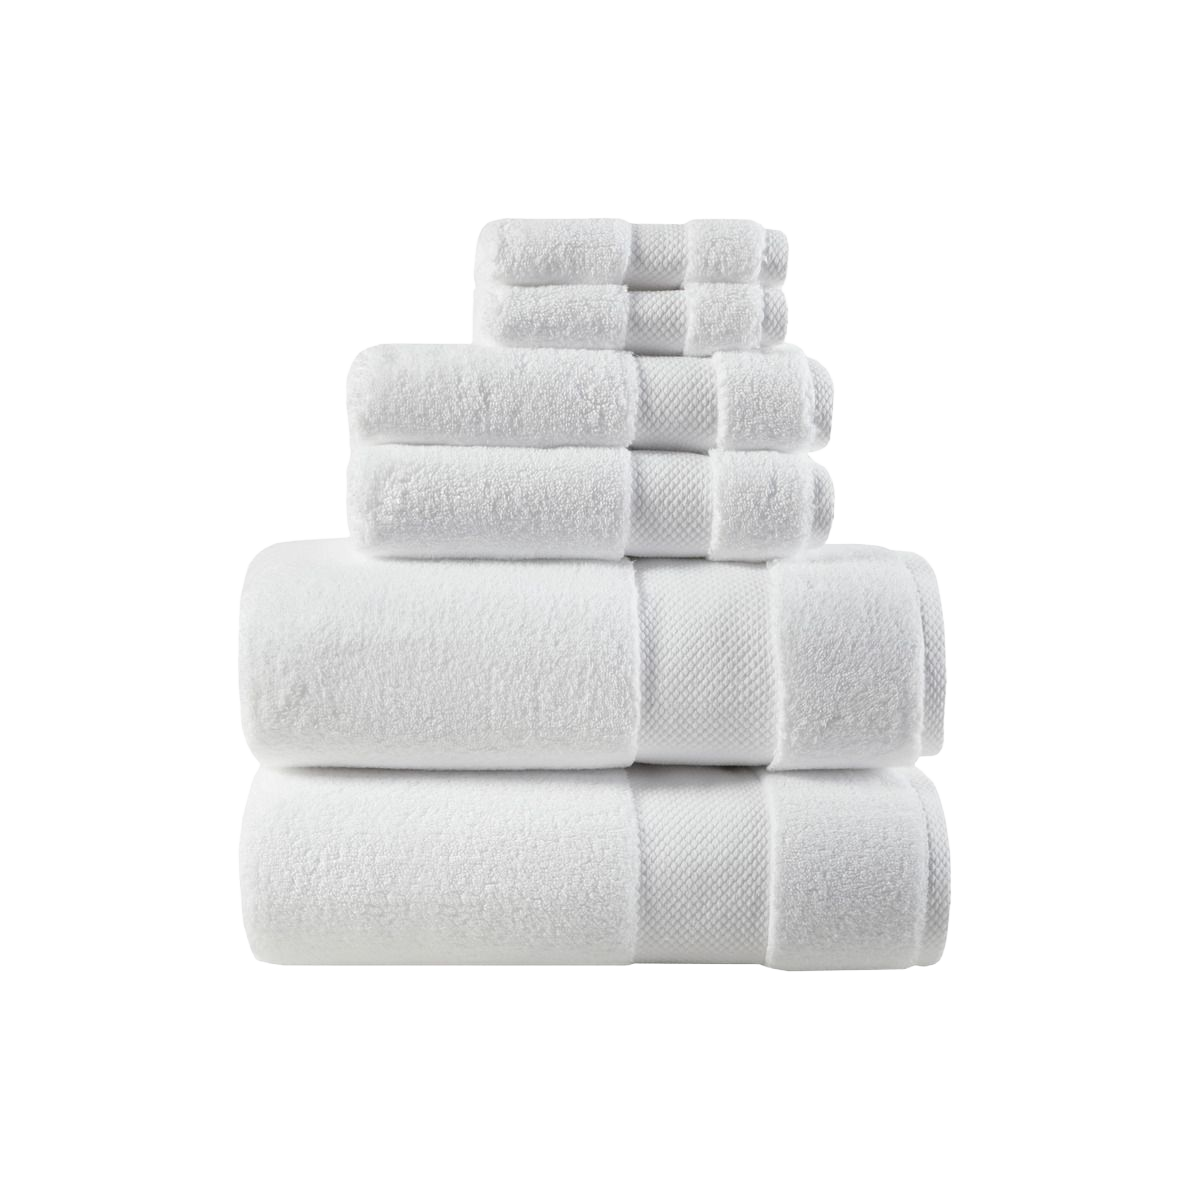 Madison Park Signature Splendor White 100% Cotton 6-Piece Towel Set